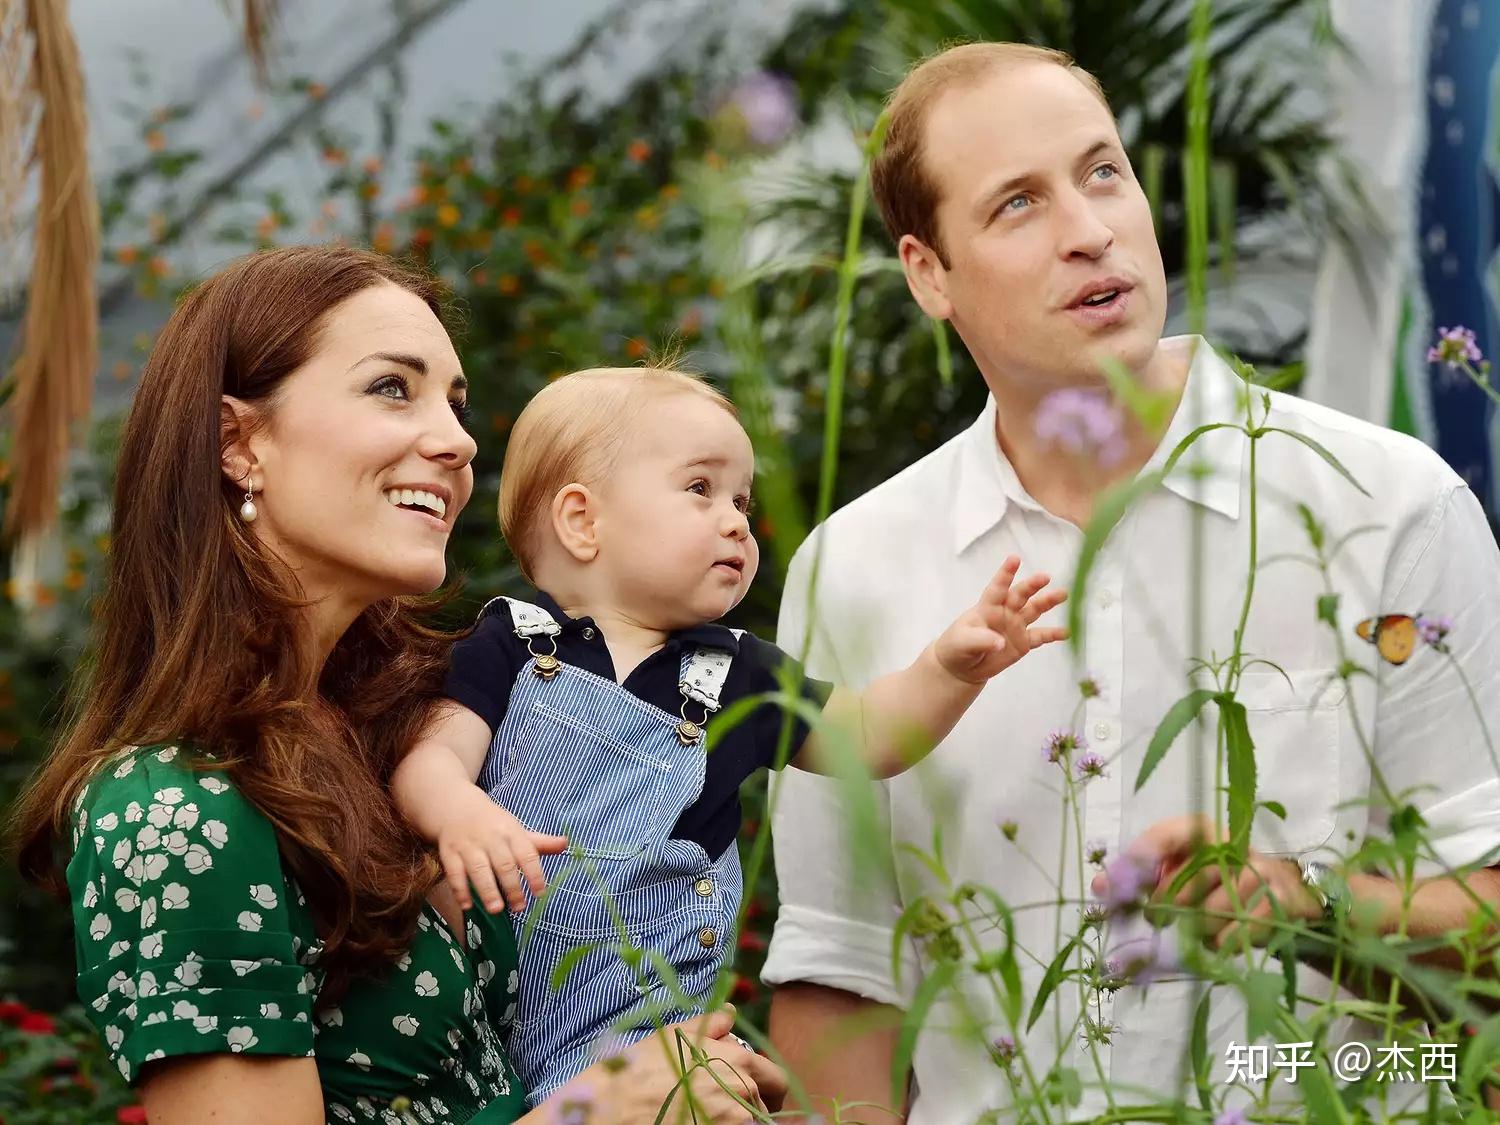 乔治王子和凯特在《女人与家庭》节目中说了些搞笑的话